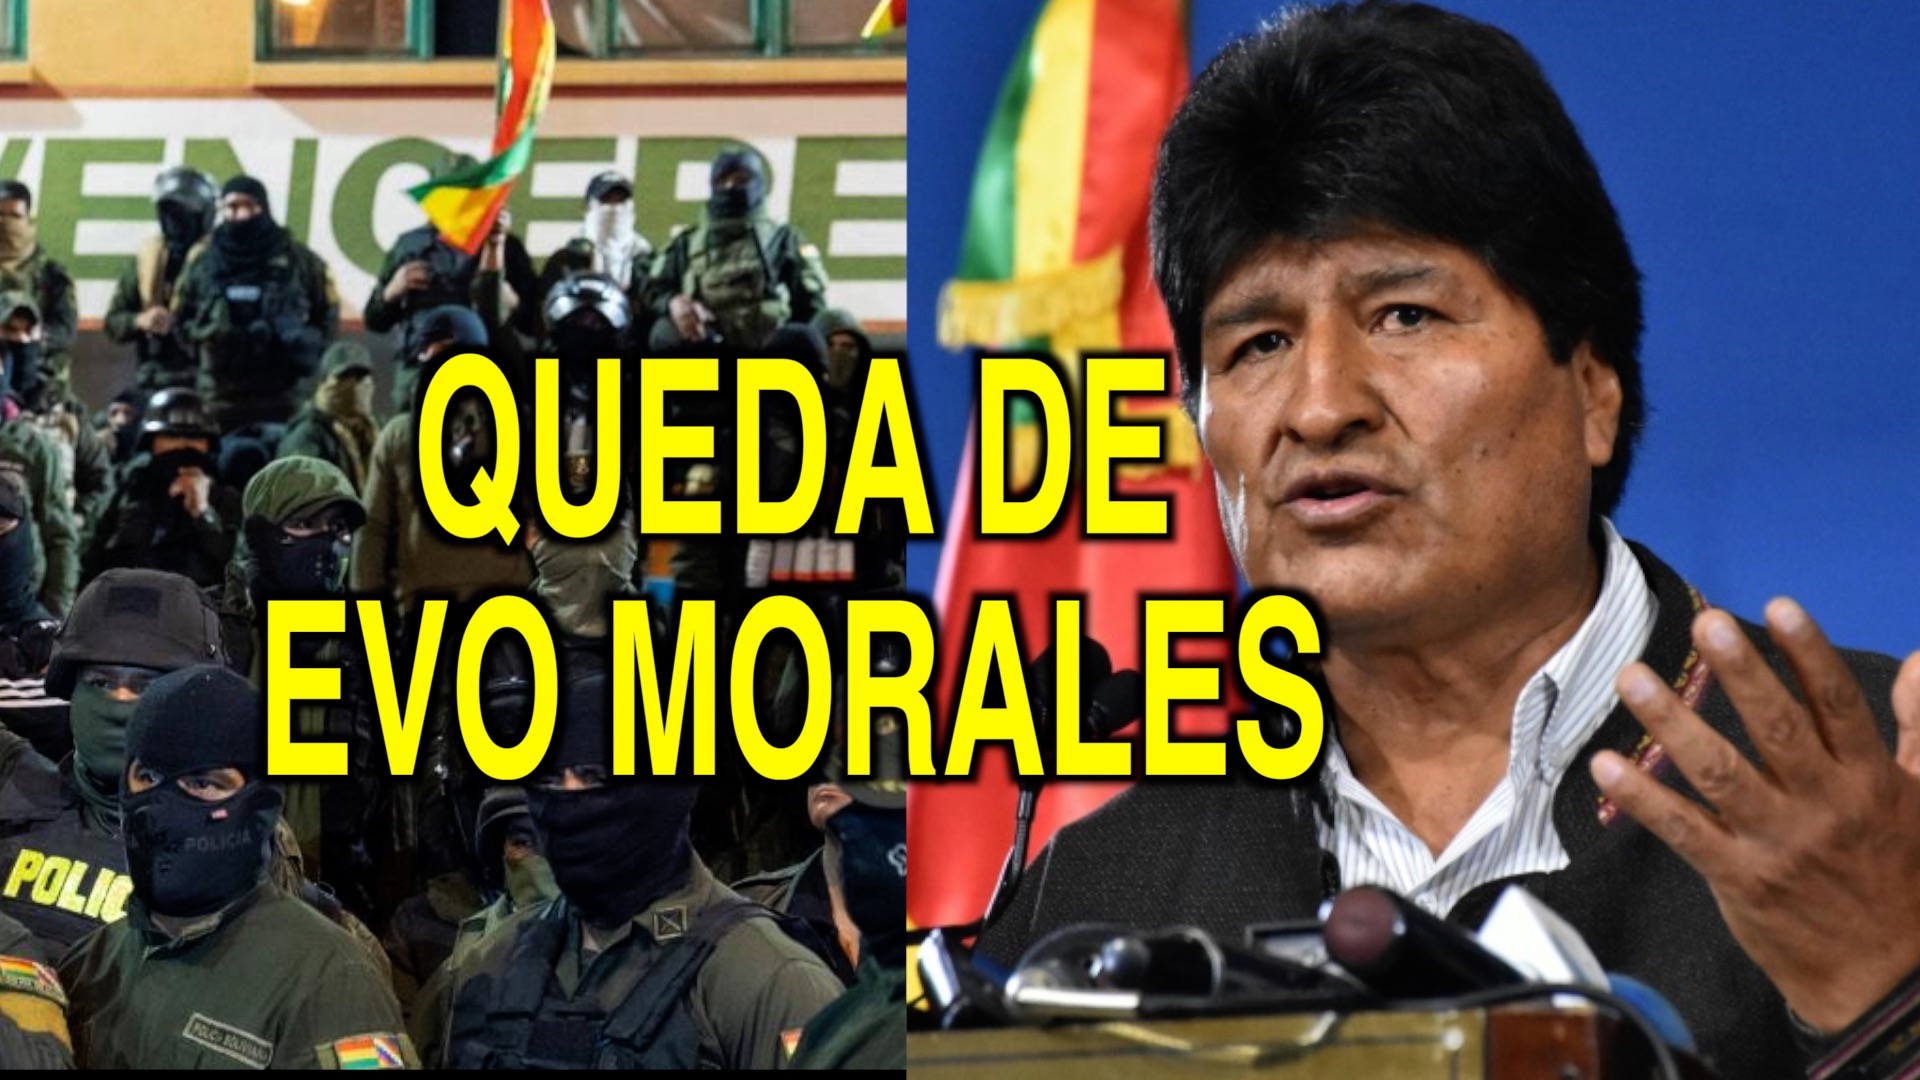 Queda de Evo Morales – Qual o futuro da Bolívia após o caos?